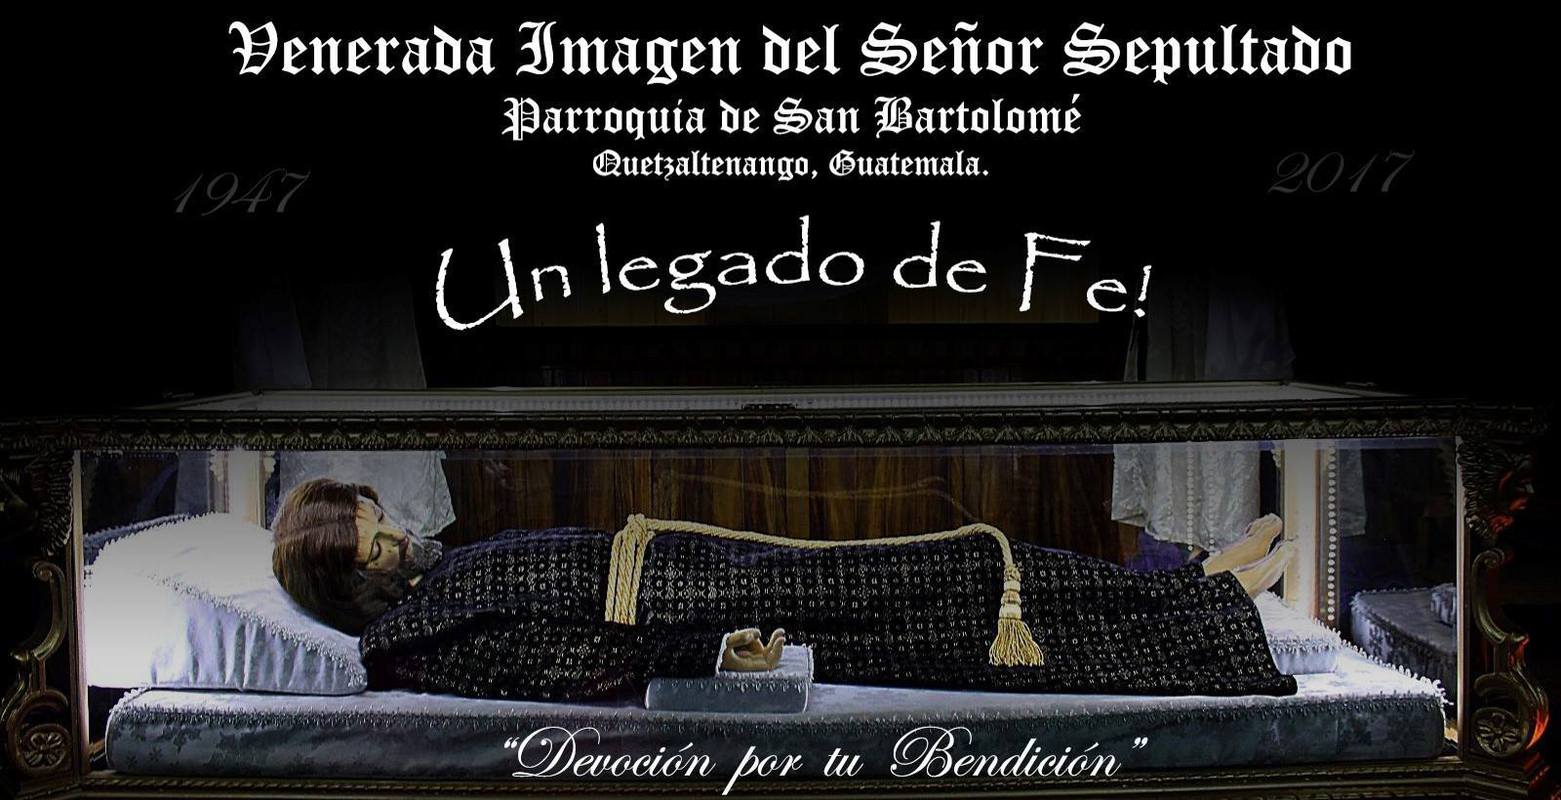 El Señor Sepultado de San Bartolomé, Quetzaltenango